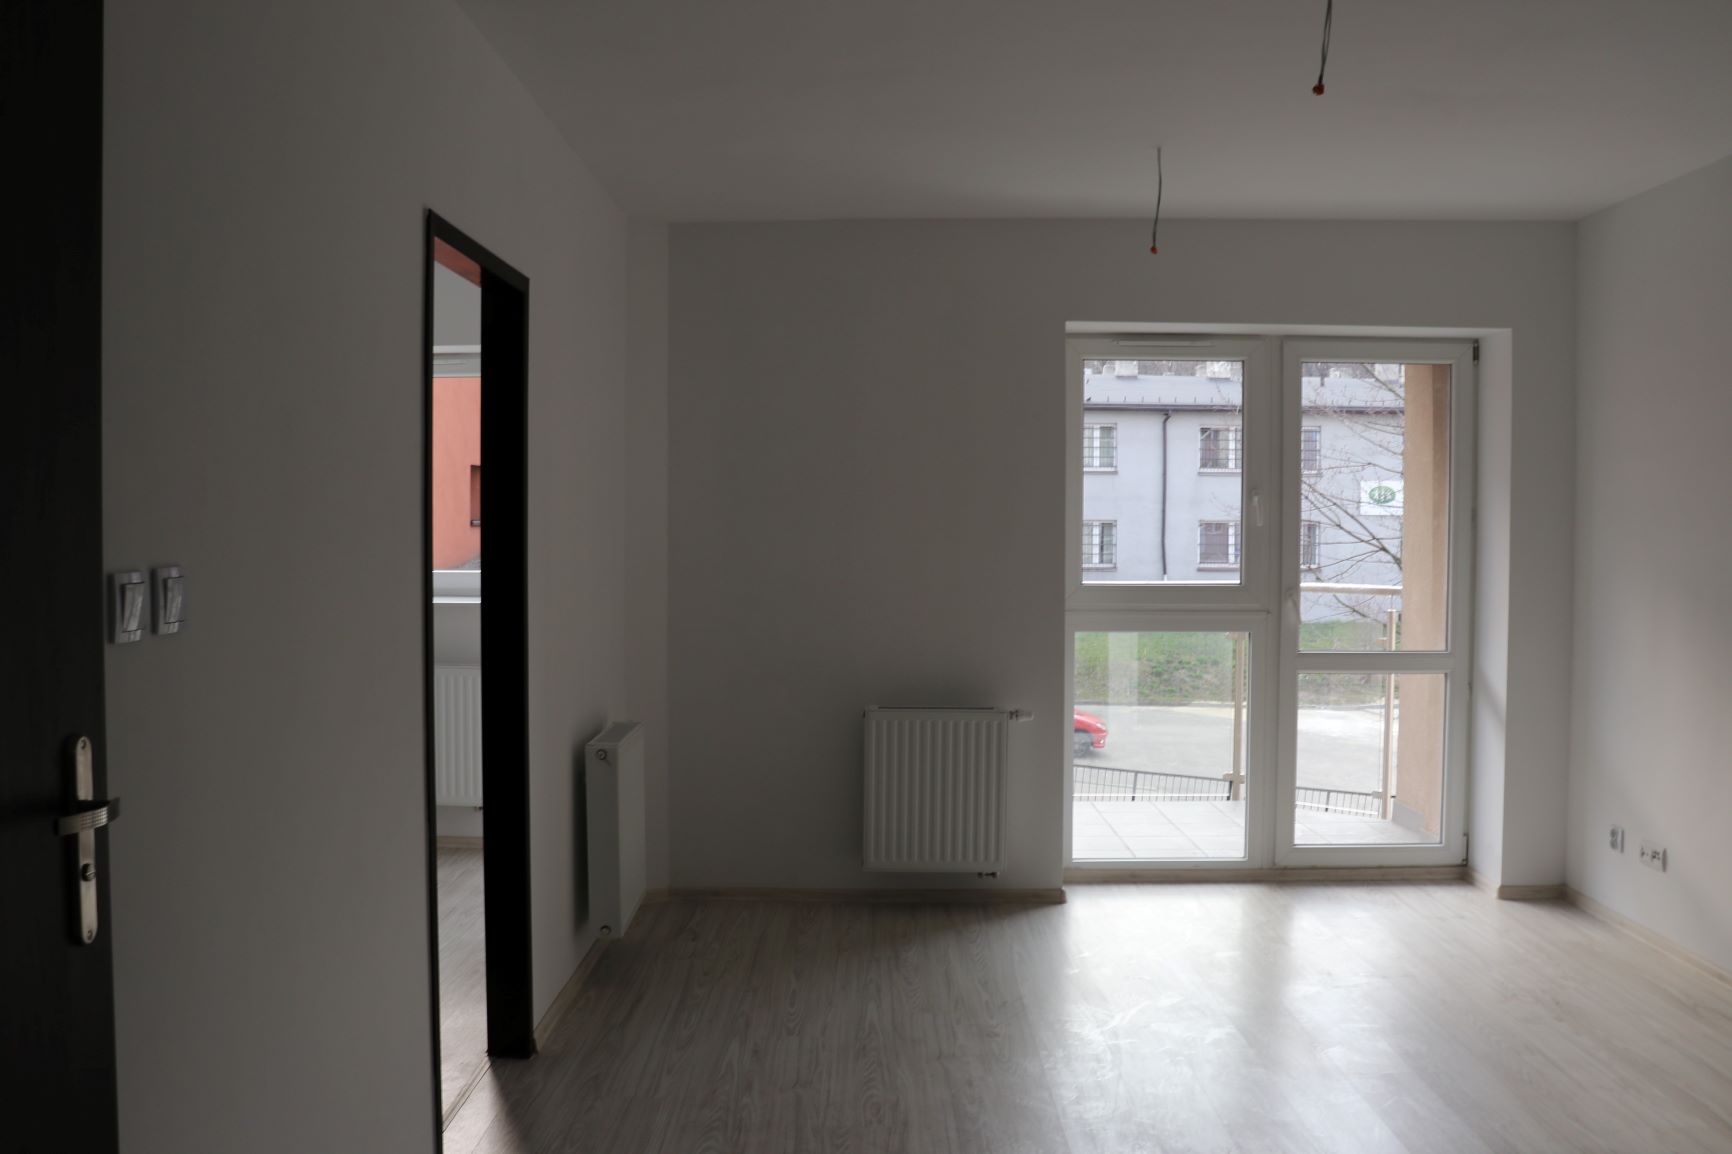 Pomieszczenie z pomalowanymi na biało ścianami z oknem balkonowym, po lewej stronie drzwi do innego pomieszczenia